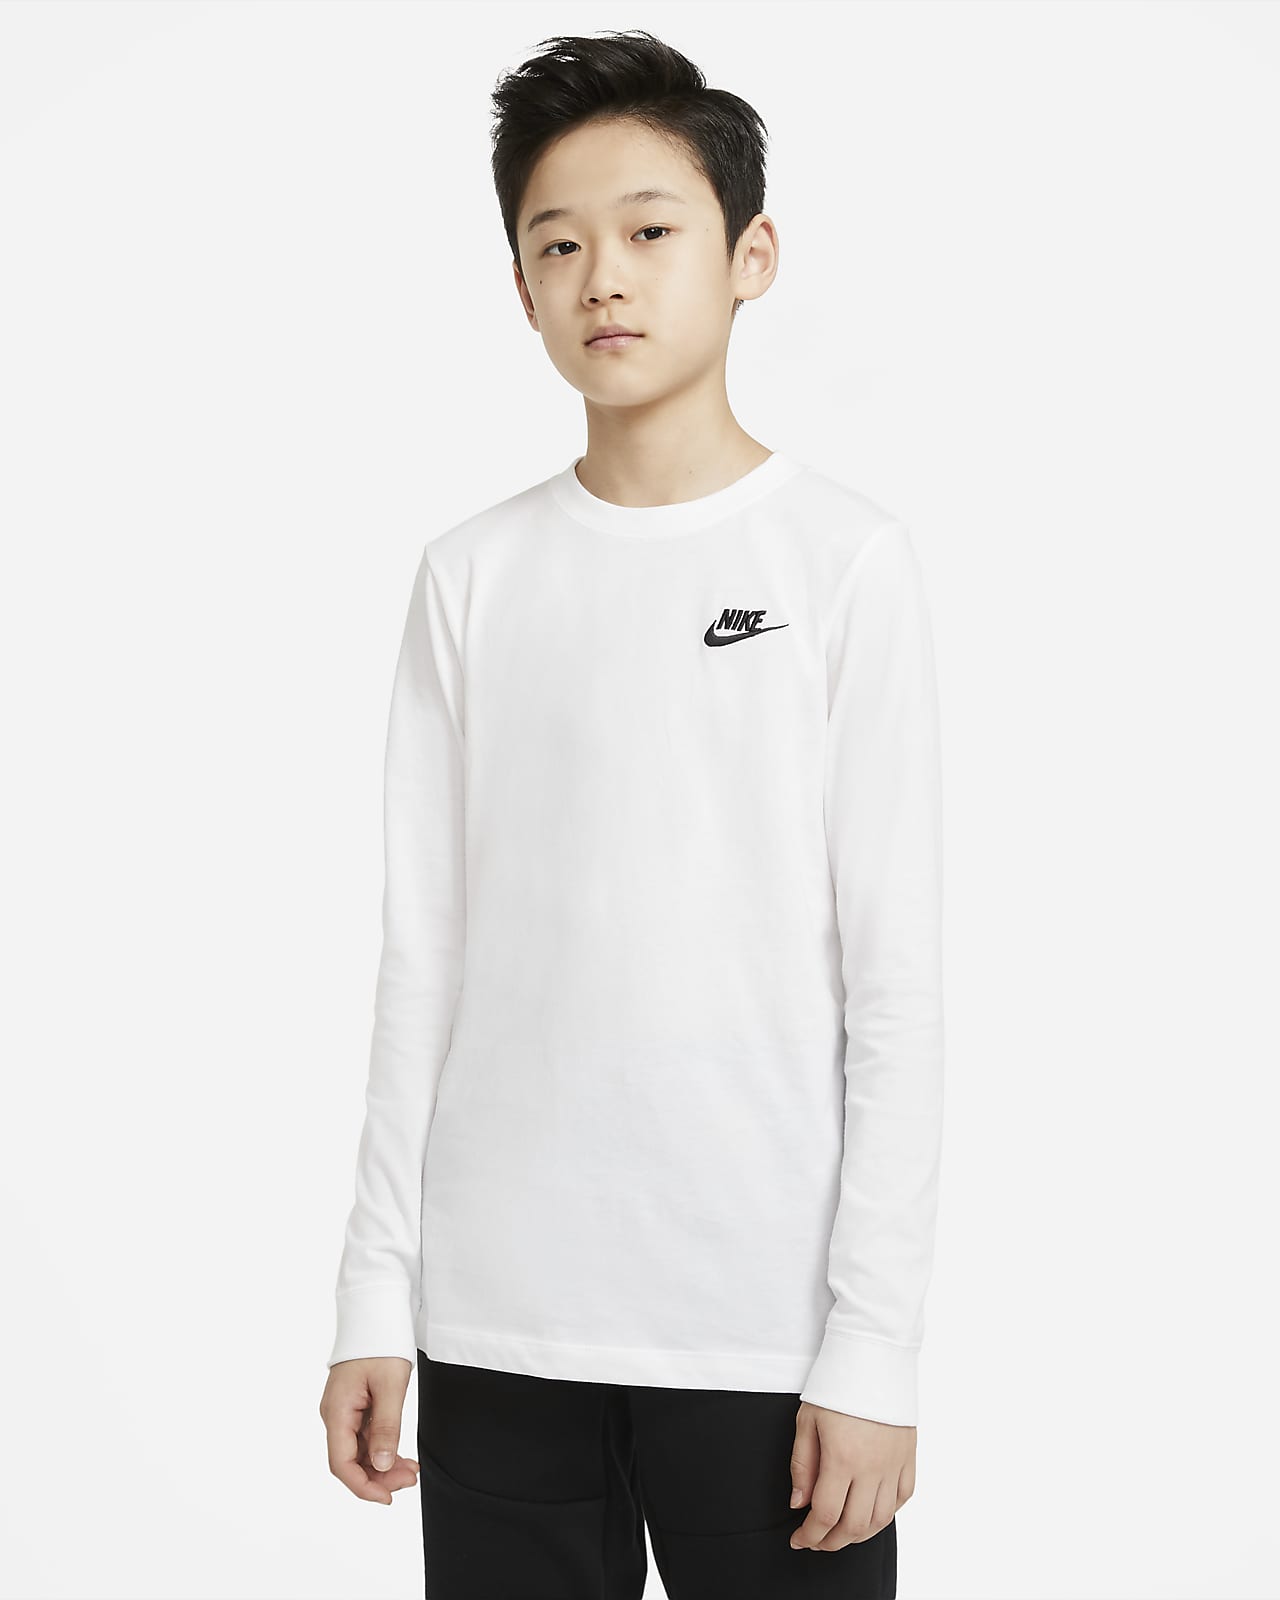 Nike Sportswear Older Kids' (Boys') Long-Sleeve T-Shirt. Nike SI